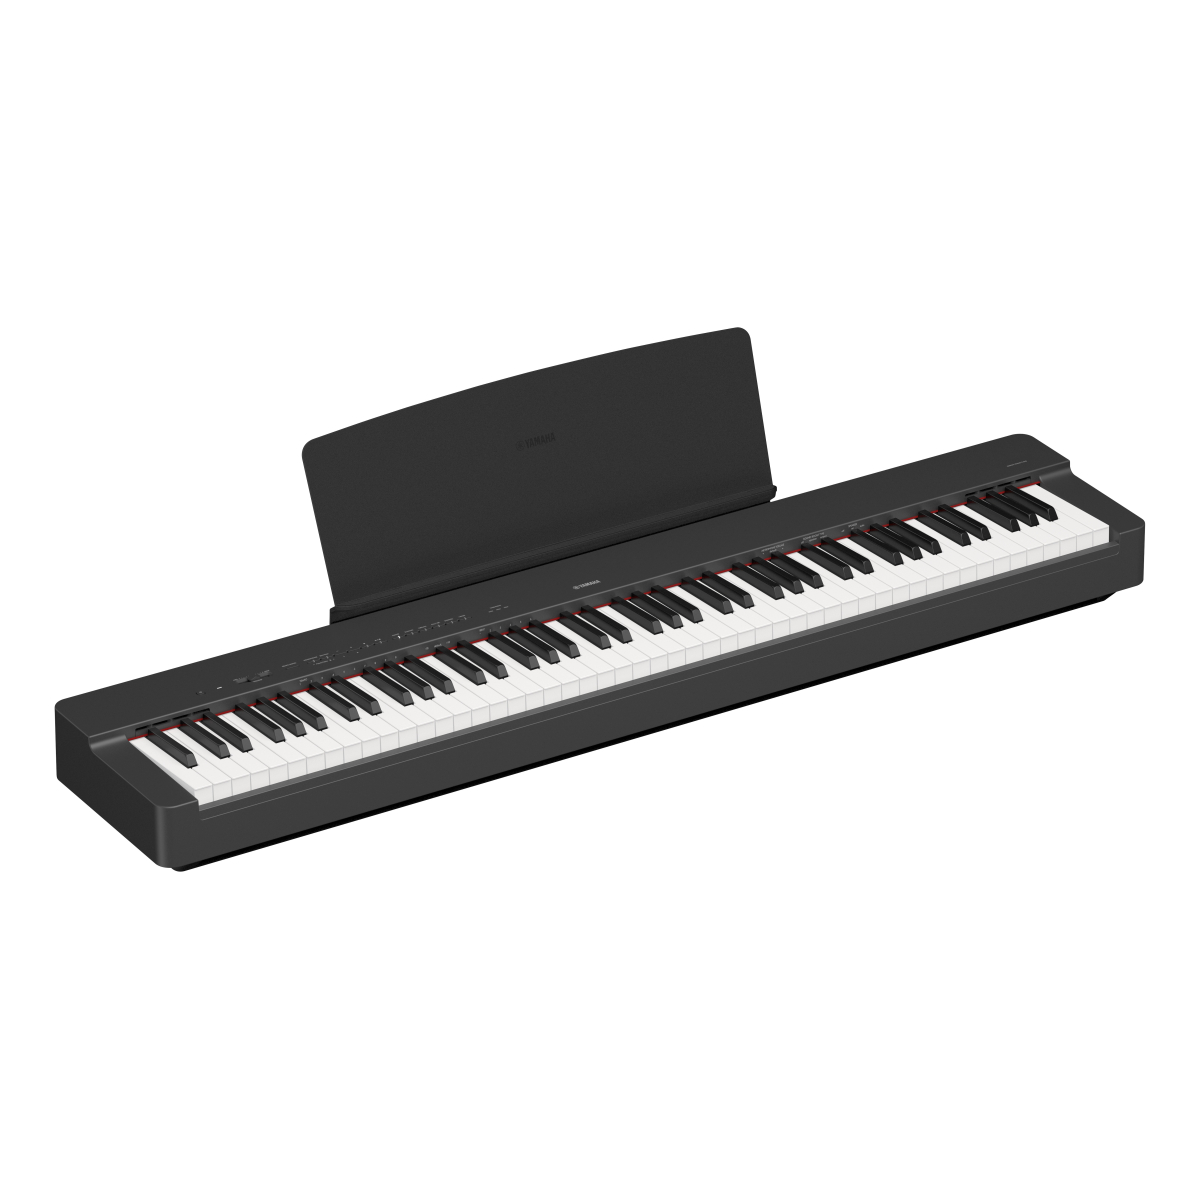 Banquette yamaha piano noir accessoires tous les produits meilleur prix